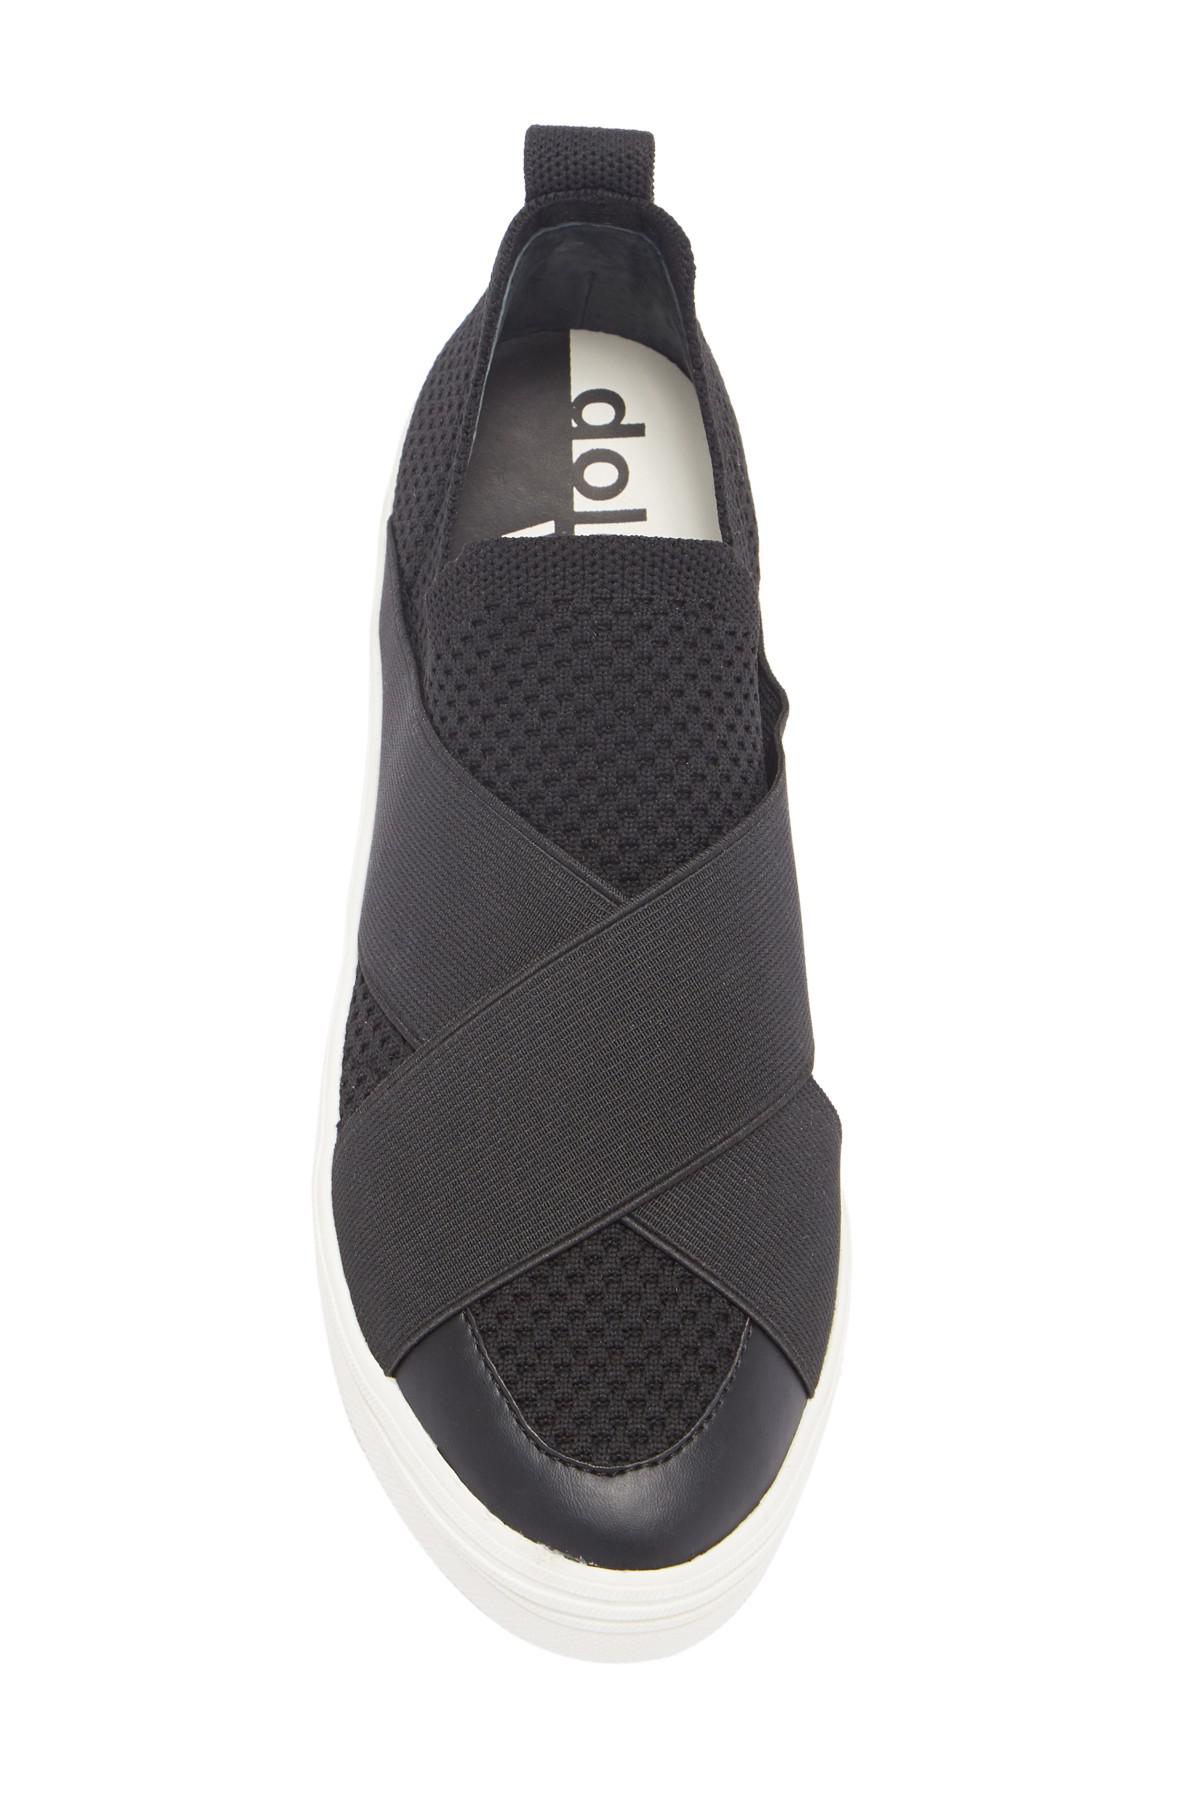 Dolce Vita Terri Slip-on Sneaker in Black | Lyst